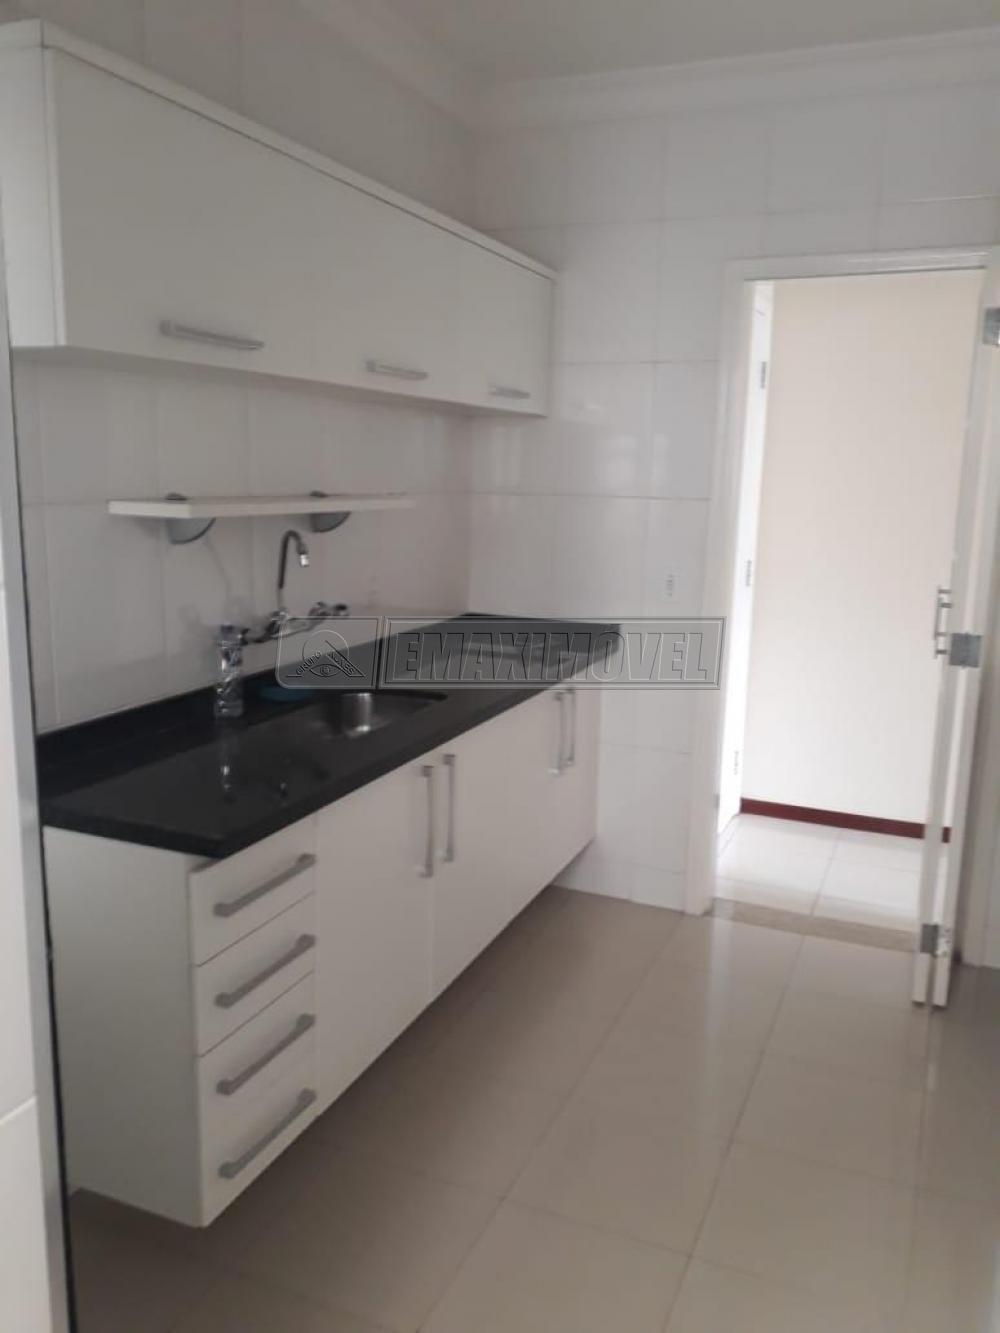 Comprar Apartamento / Padrão em Sorocaba R$ 320.000,00 - Foto 12